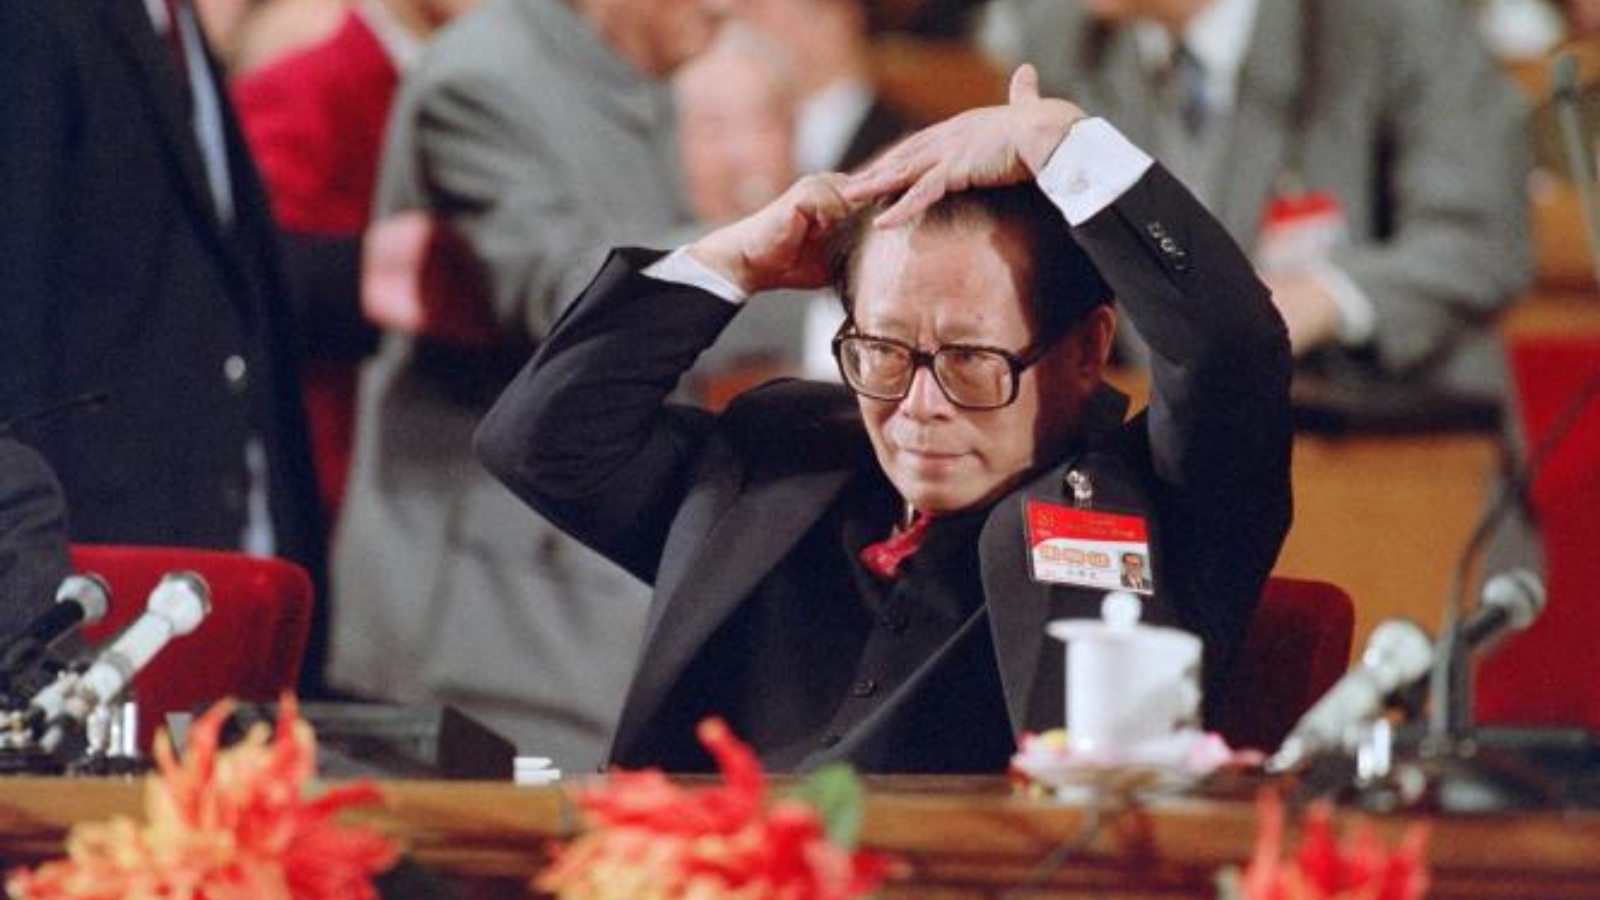 الأمين العام للحزب الشيوعي الصيني جيانغ زيمين يمشط شعره قبل خطابه في المؤتمر الرابع عشر للحزب الشيوعي الصيني في بكين، في أكتوبر 1992